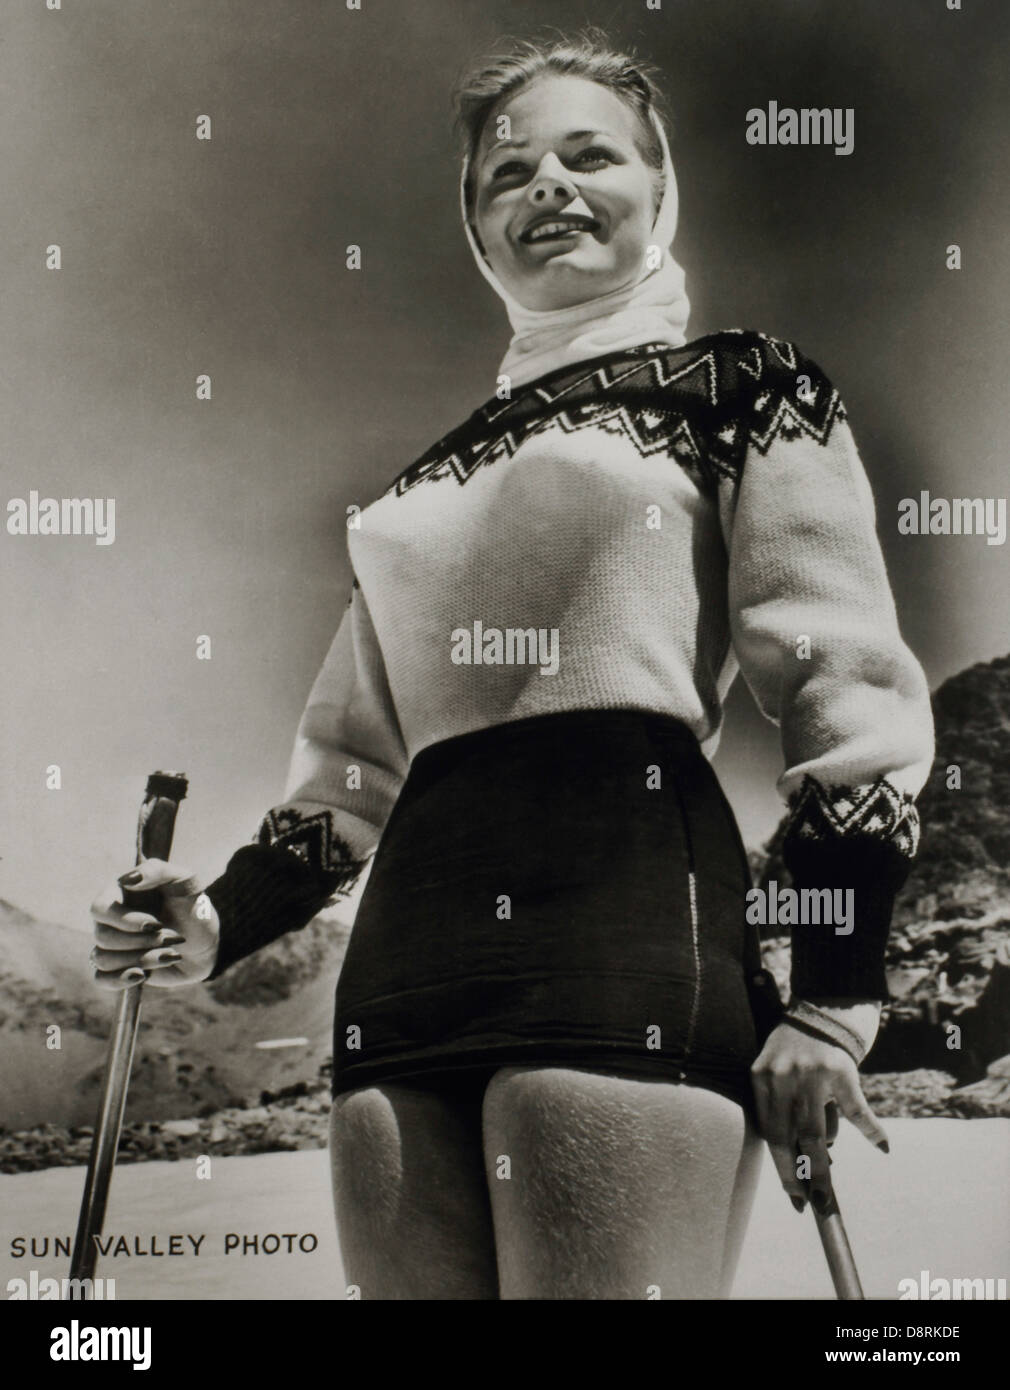 Ski fashion -Fotos und -Bildmaterial in hoher Auflösung – Alamy